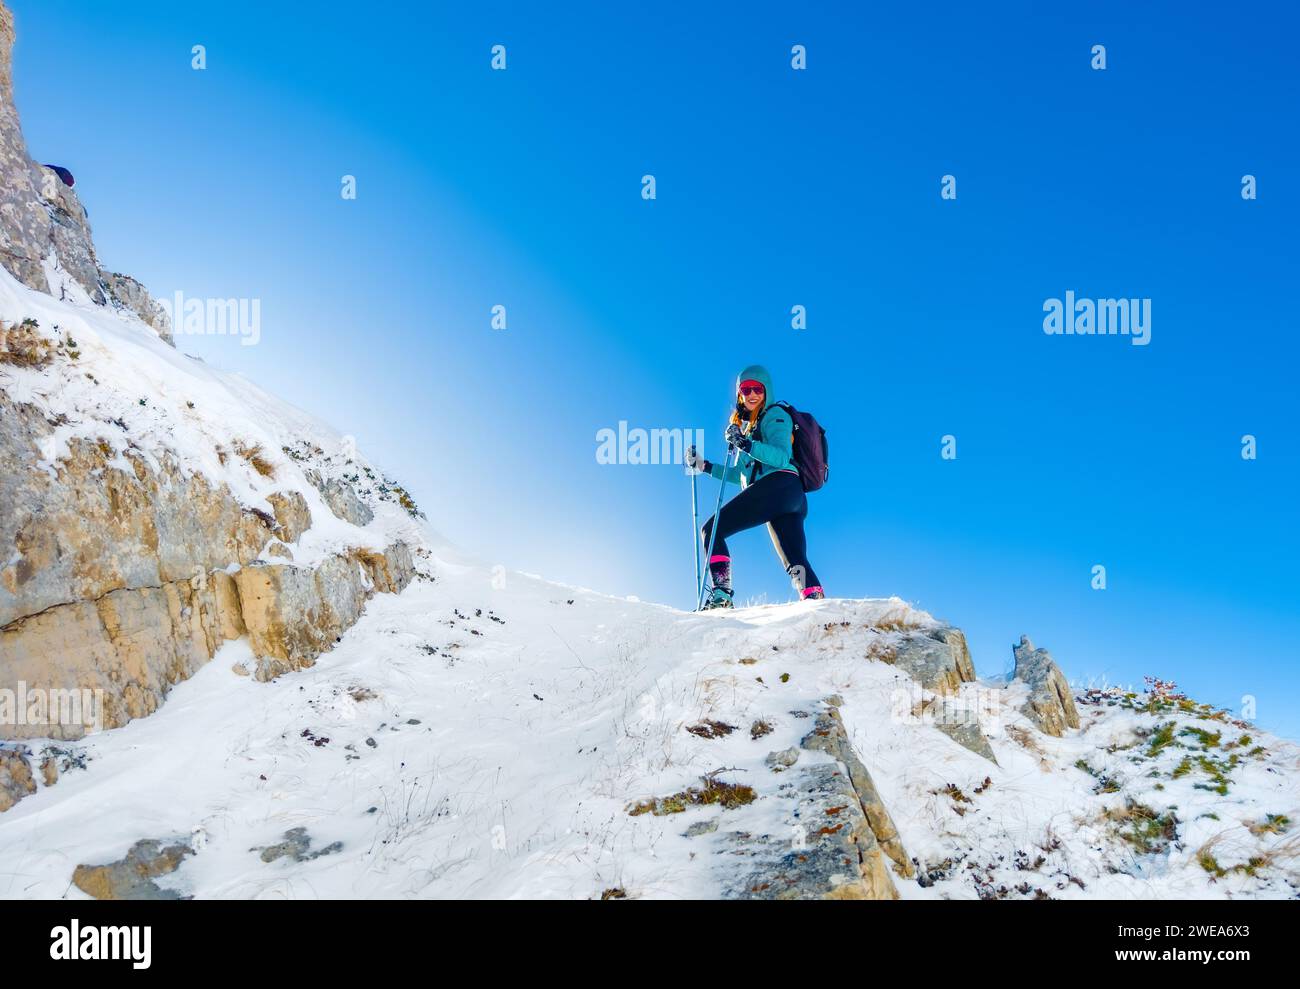 Campo felice, Italia - la suggestiva vetta dell'altopiano abruzzese, la catena montuosa del Monte Rotondo, durante l'inverno con neve e alpinisti Foto Stock